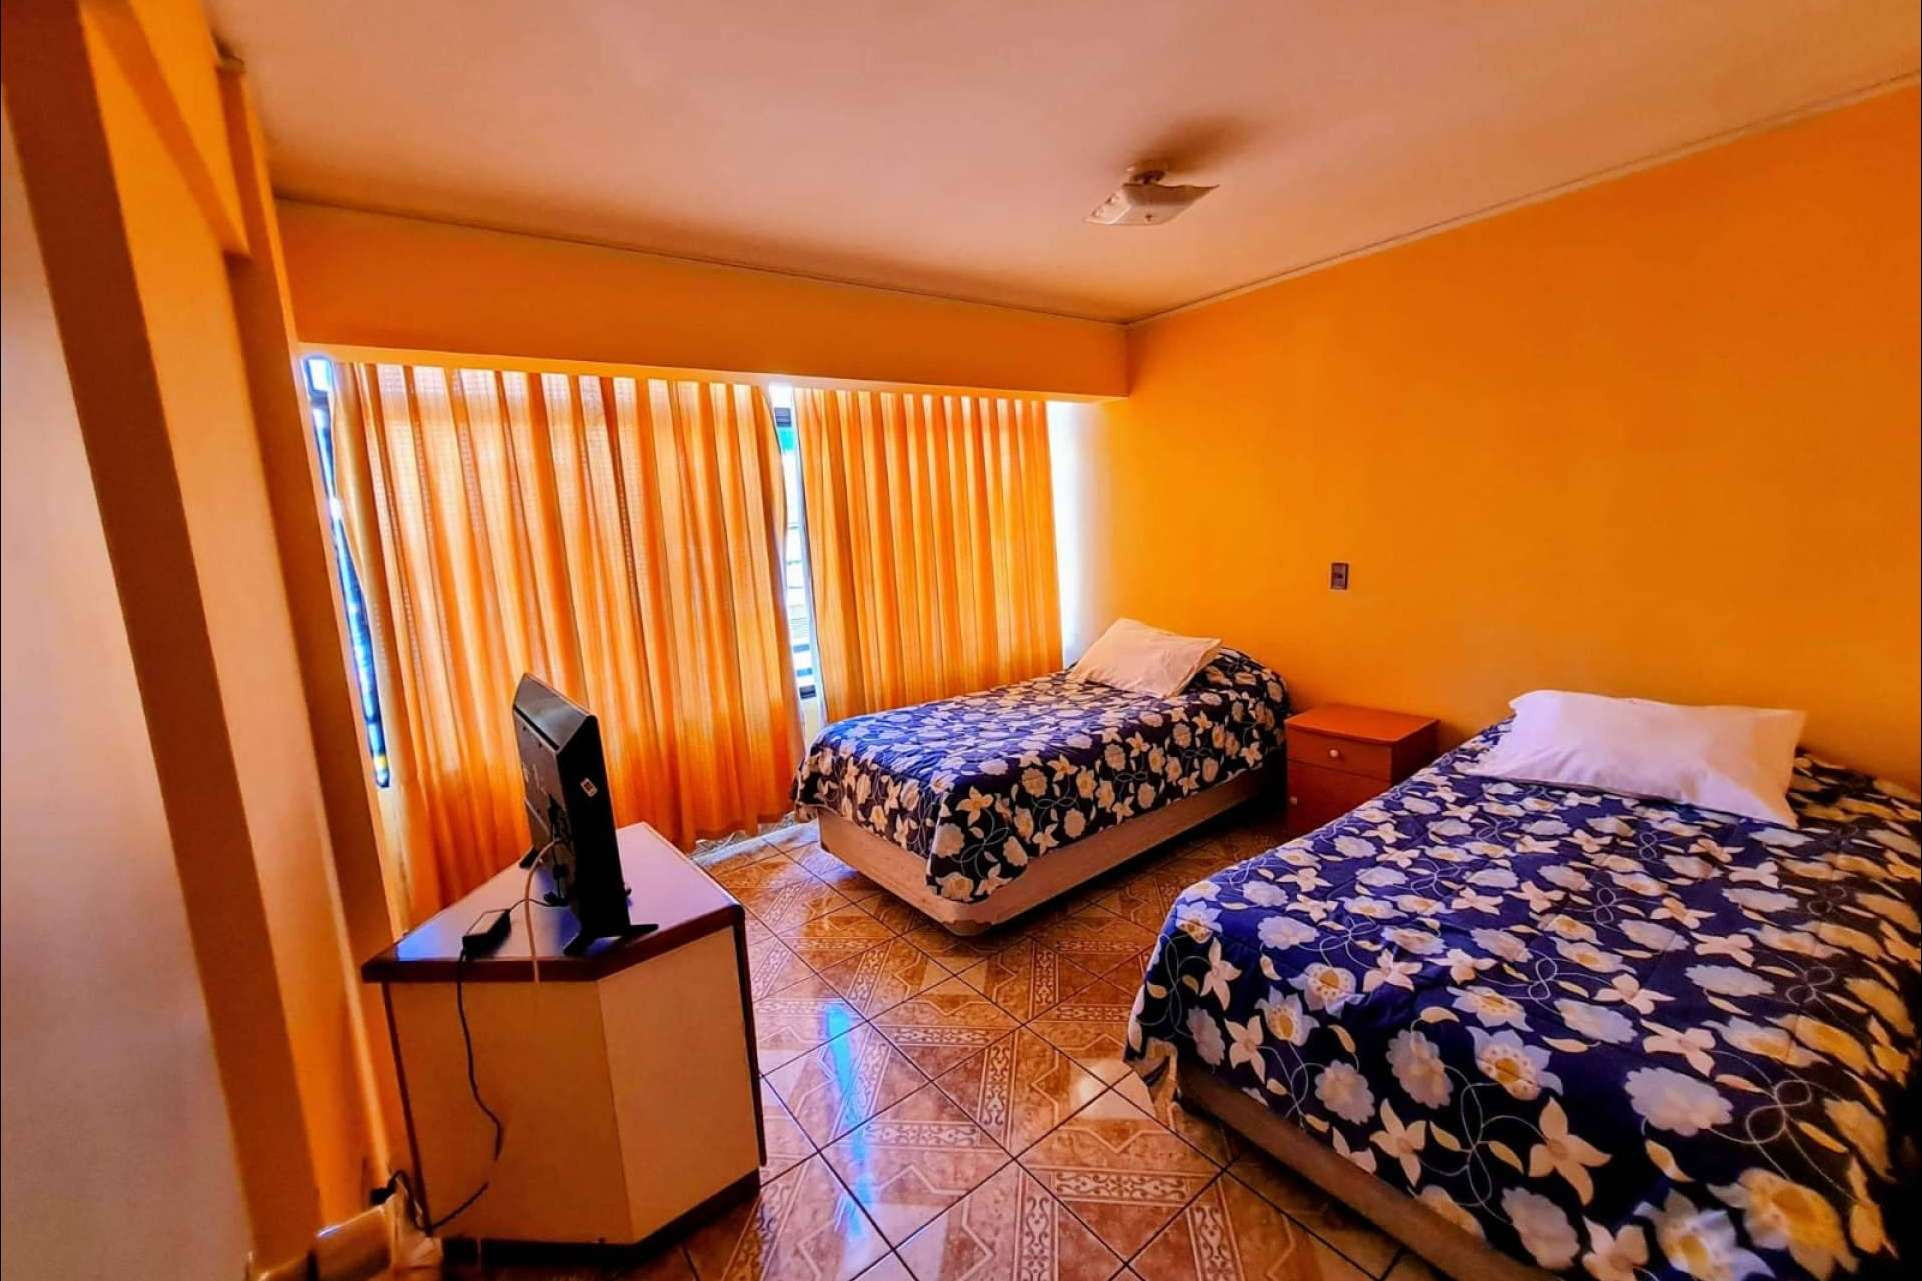  Hotel Antofagasta Centro, alojamiento en Antofagasta cómodo, céntrico y seguro 